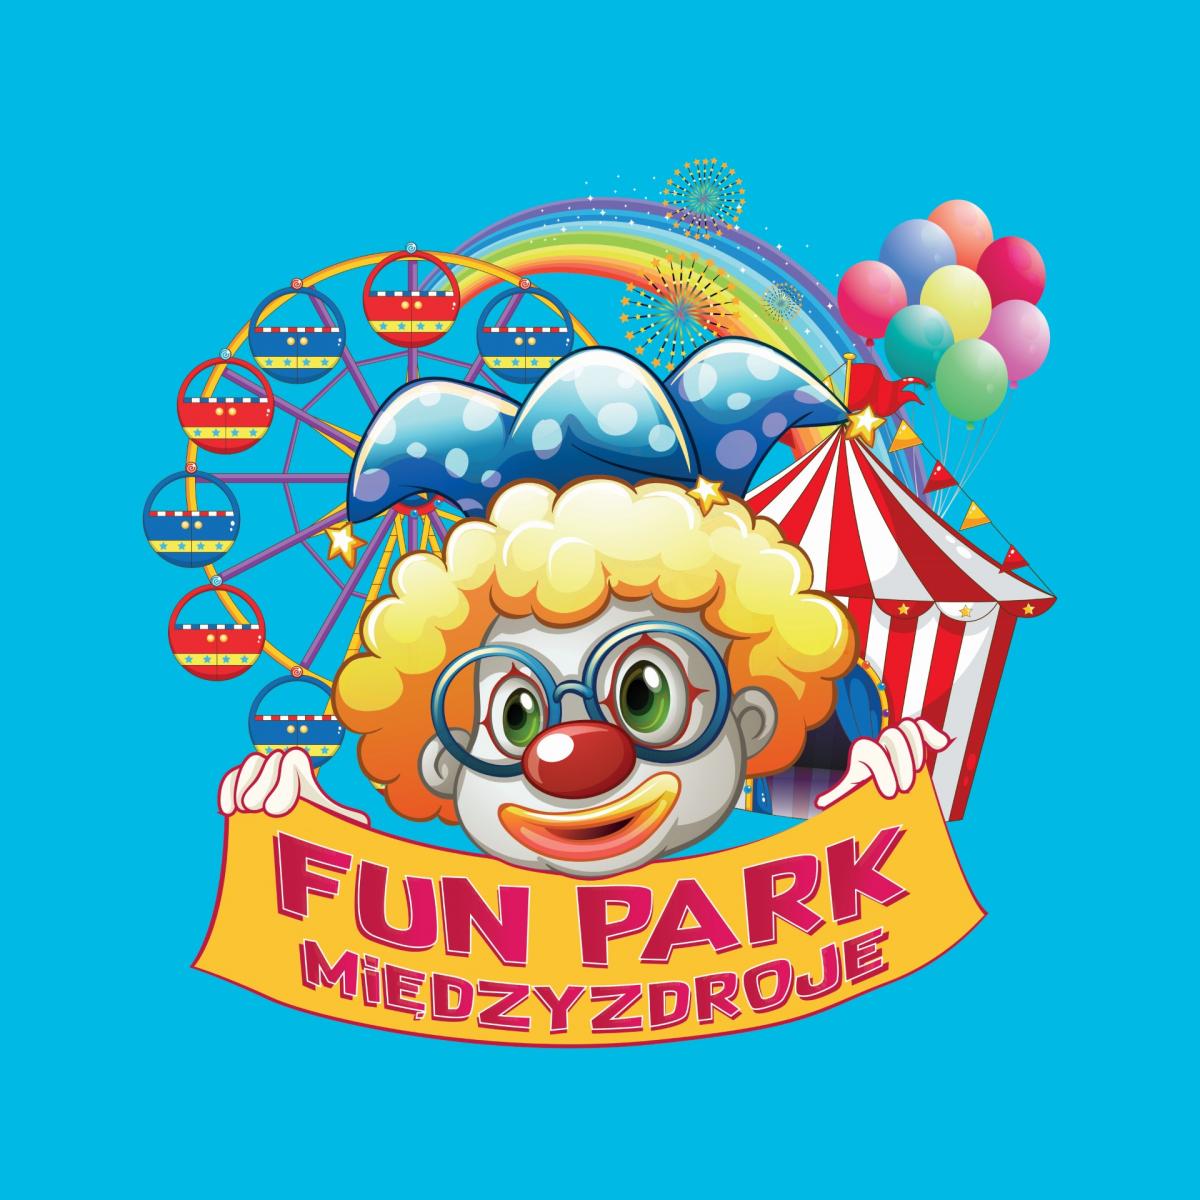 Fun Park Międzyzdroje